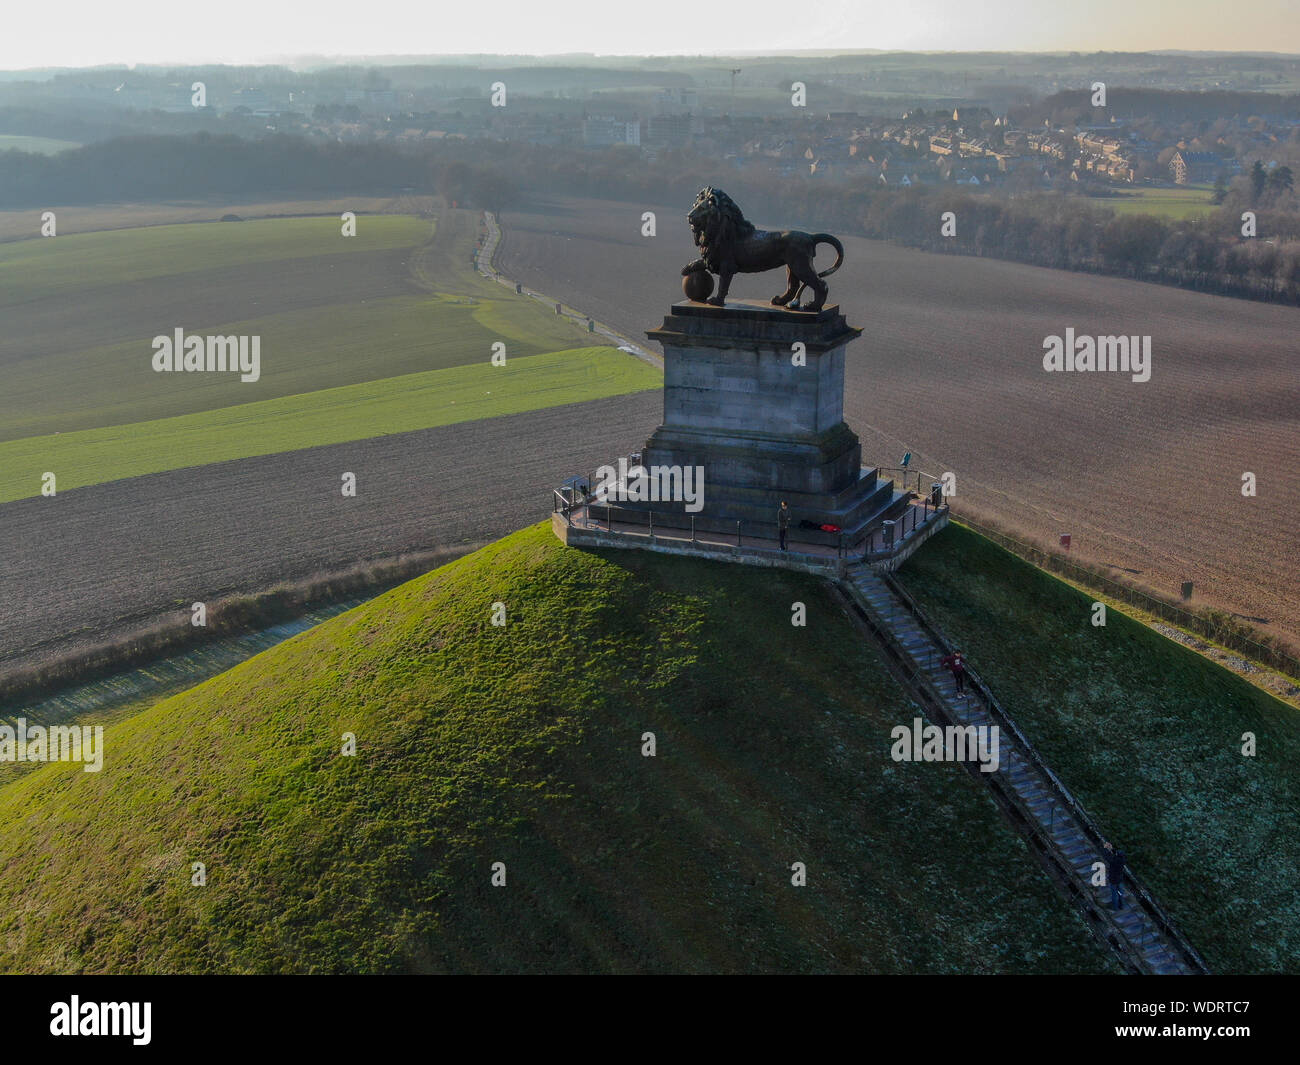 Luftaufnahme der Damm des Löwen mit Farm Land um. Die immense Butte du Lion auf dem Schlachtfeld von Waterloo, wo Napoleon starb. Belgien. Stockfoto